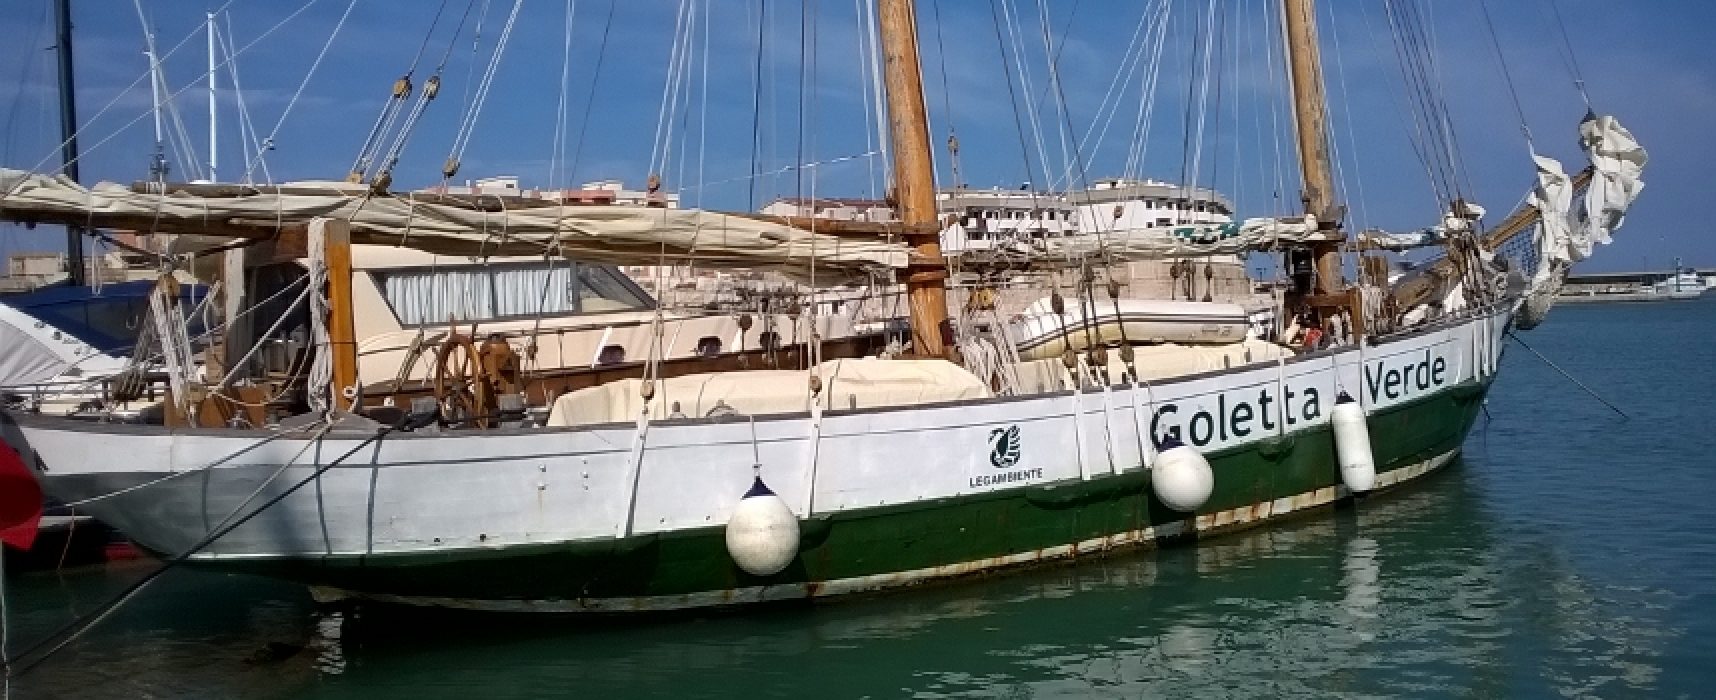 La Goletta verde approda a Bisceglie, idee e iniziative per promuovere la cultura del mare